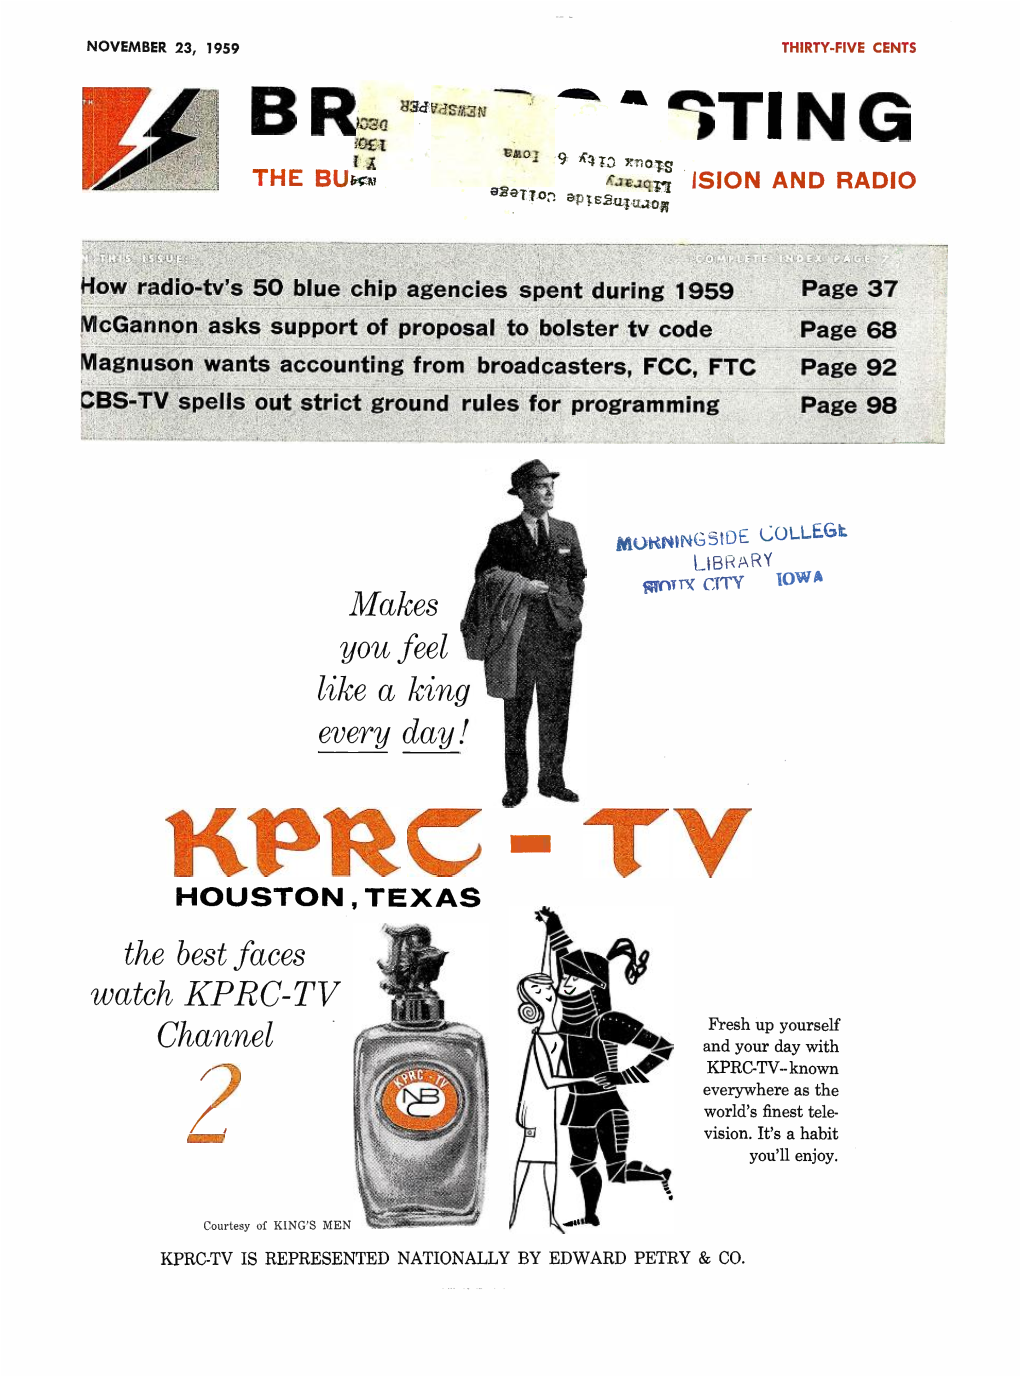 Watch KPRC -TV Channel